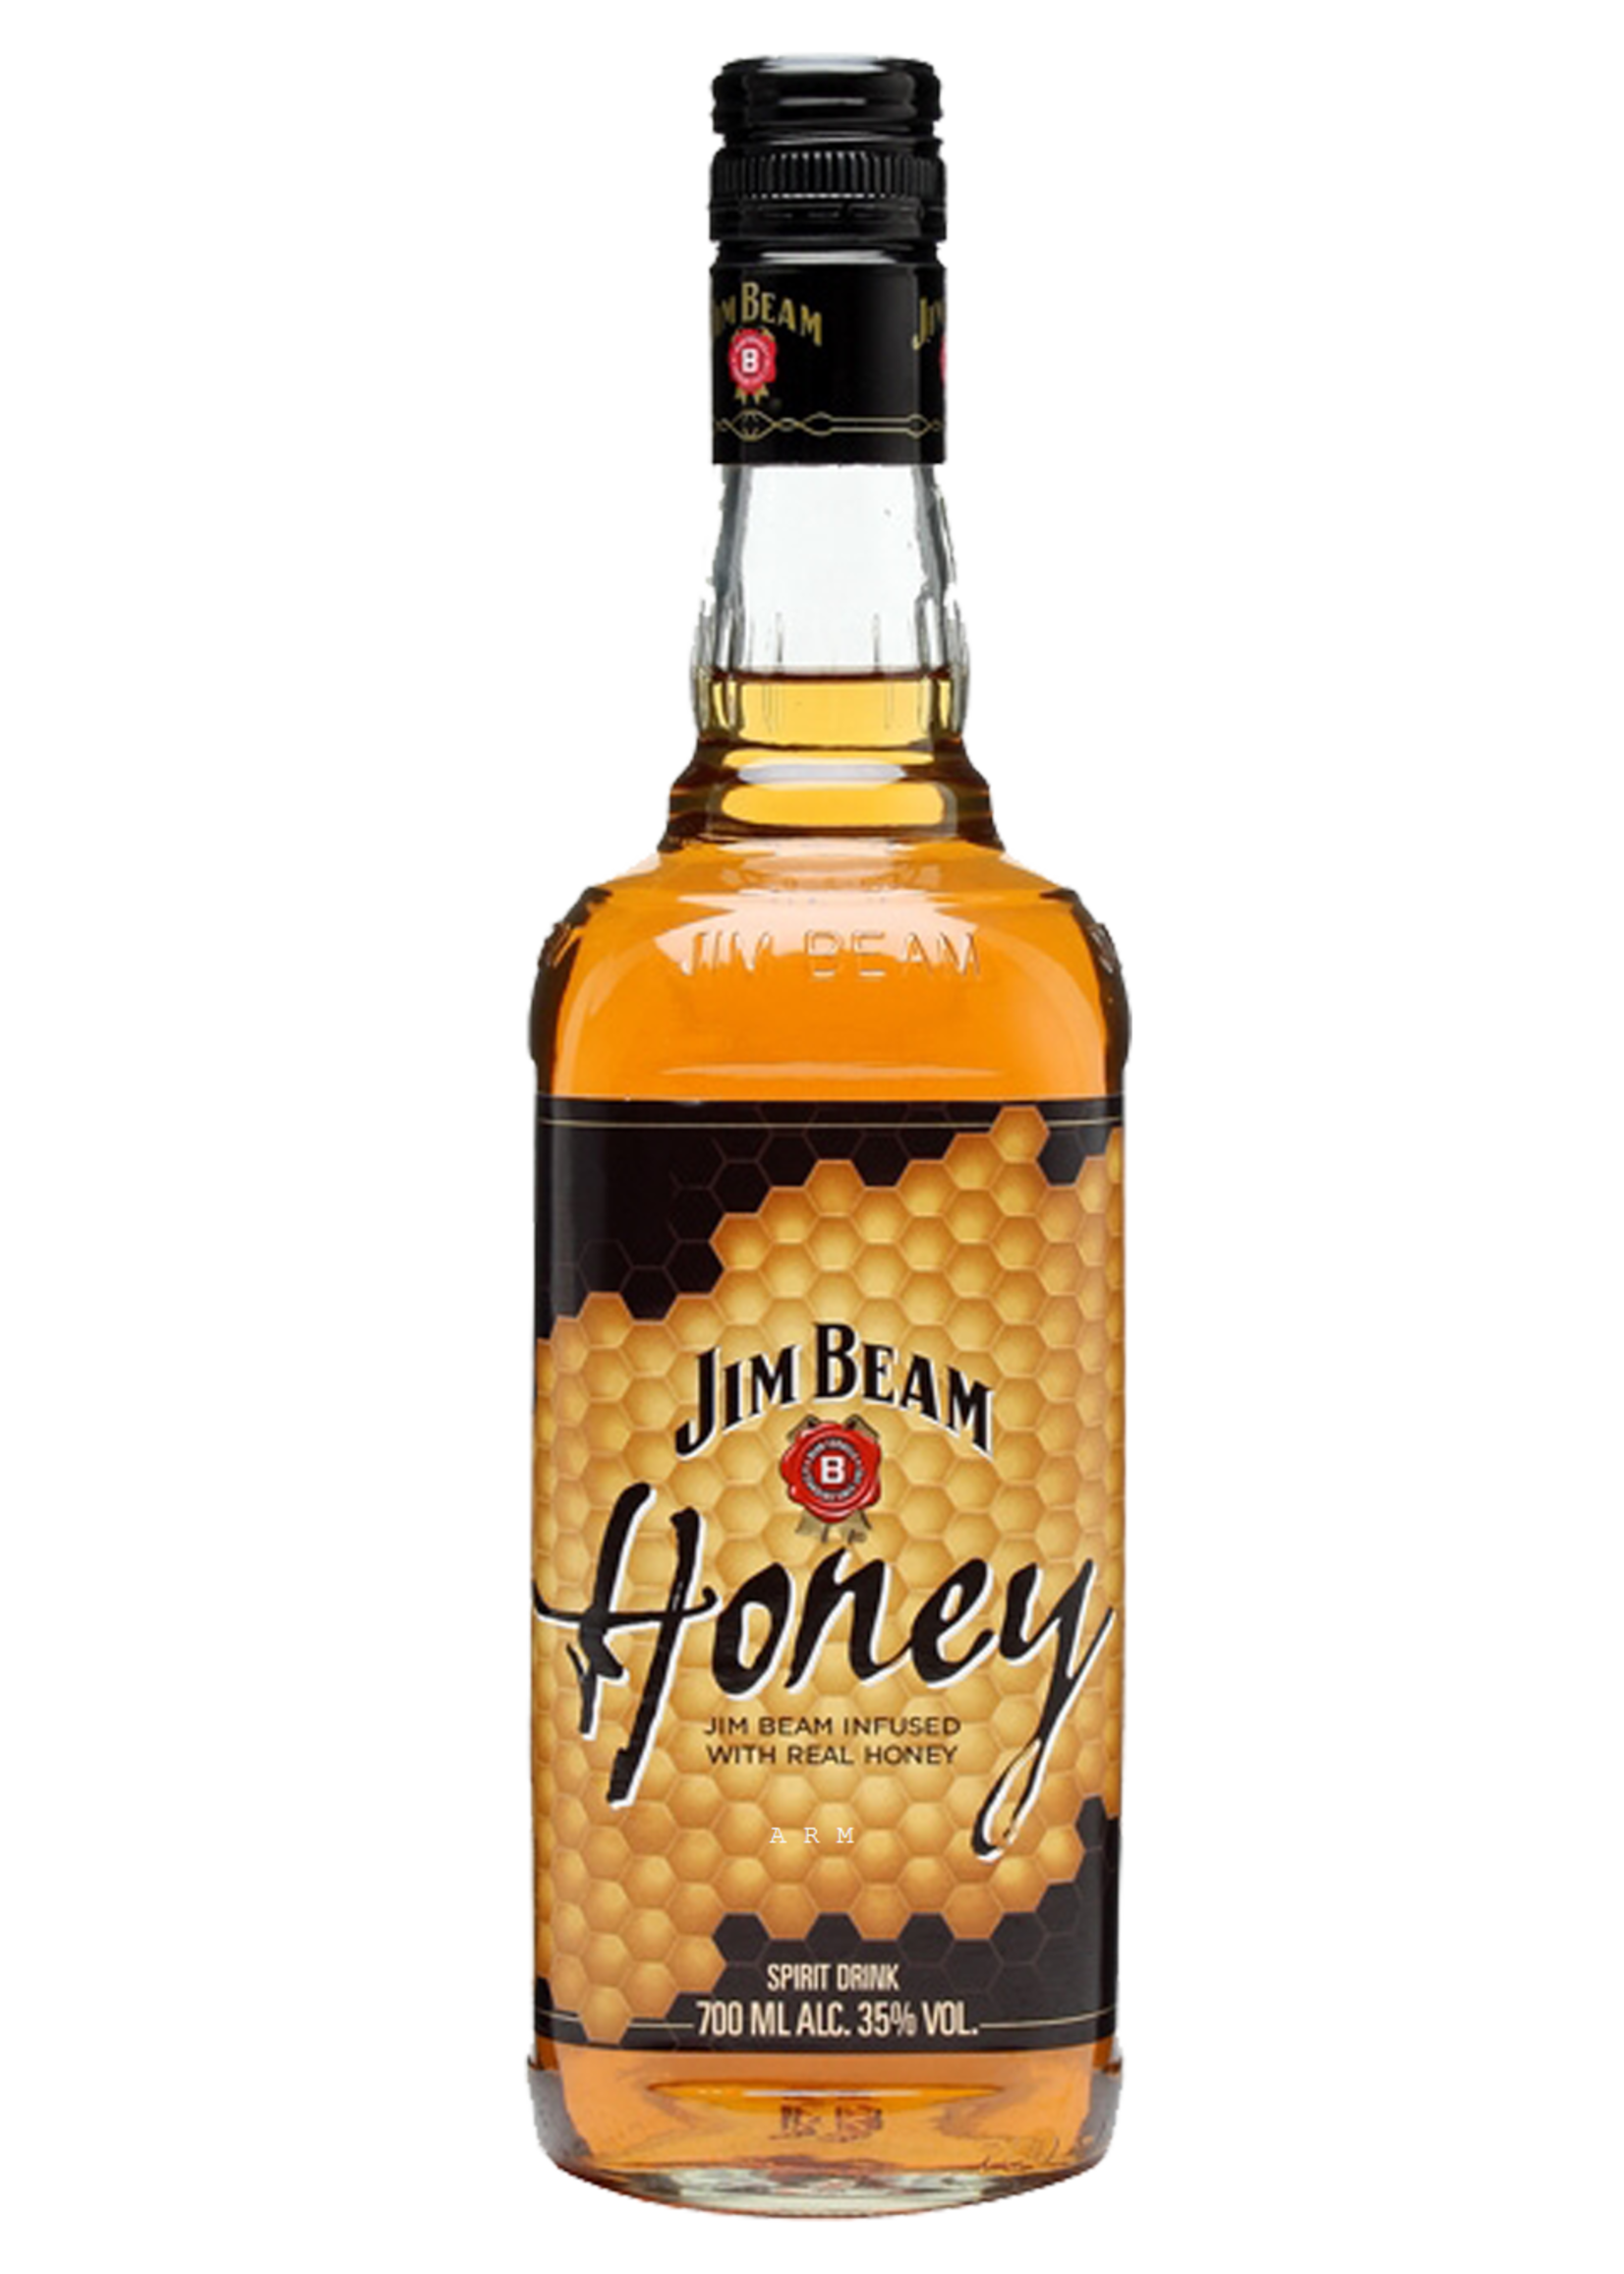 Jim Beam Jim Beam Honey